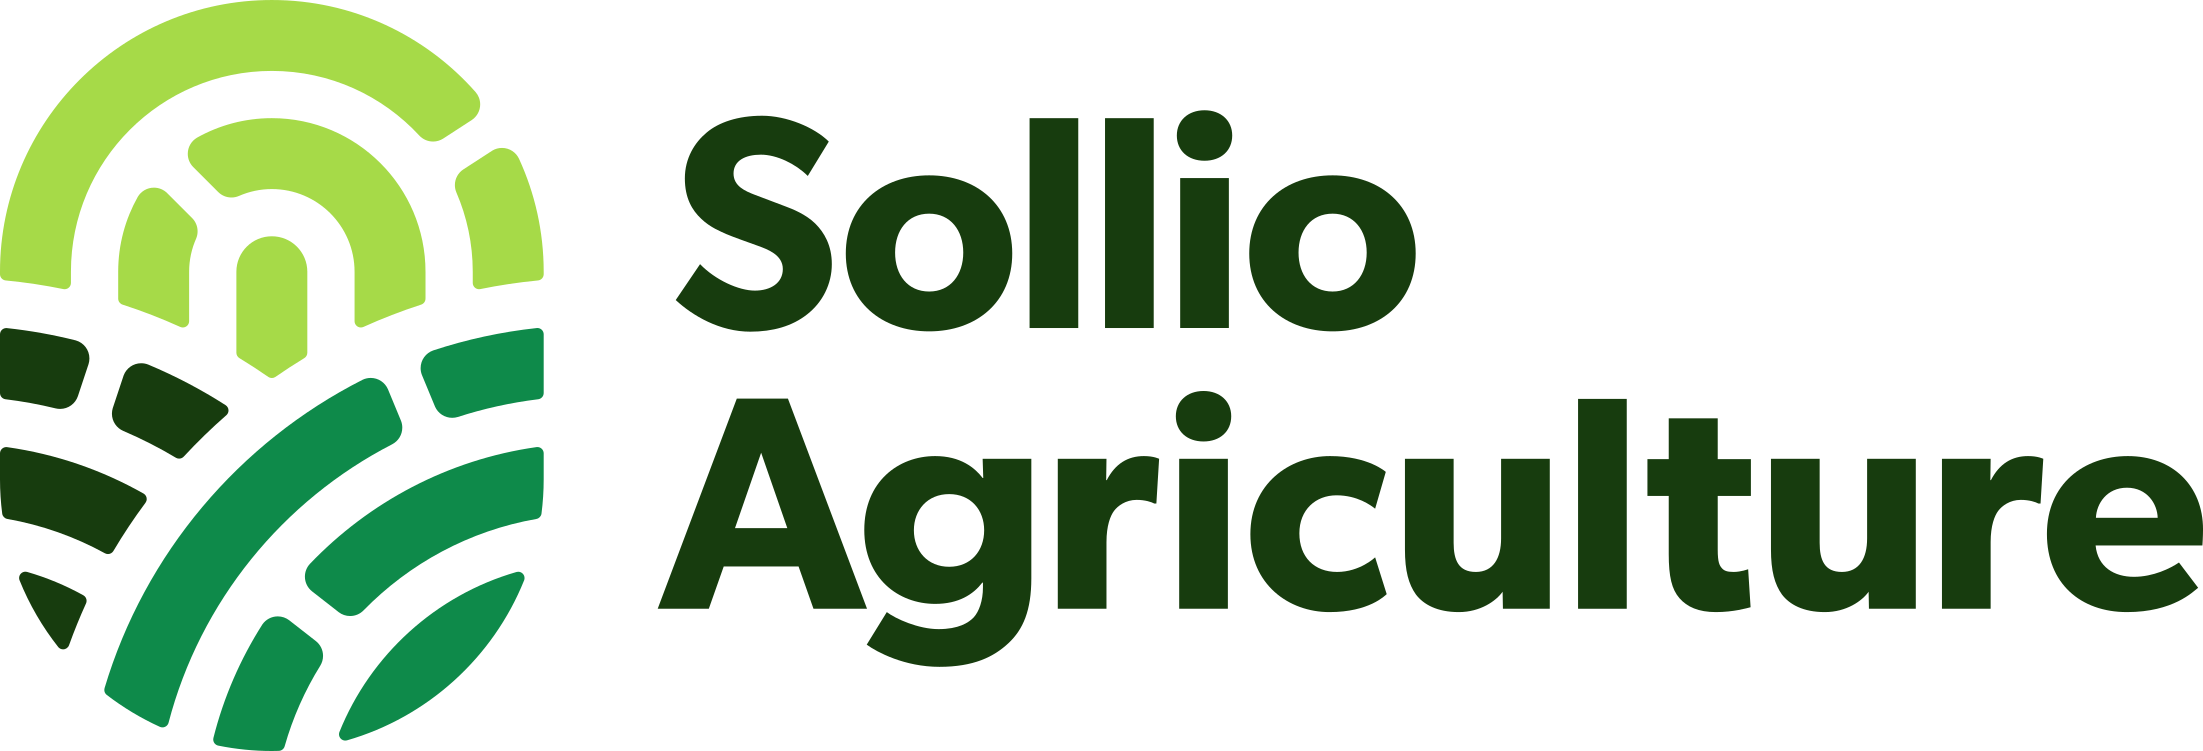 Logo Sollio Agriculture